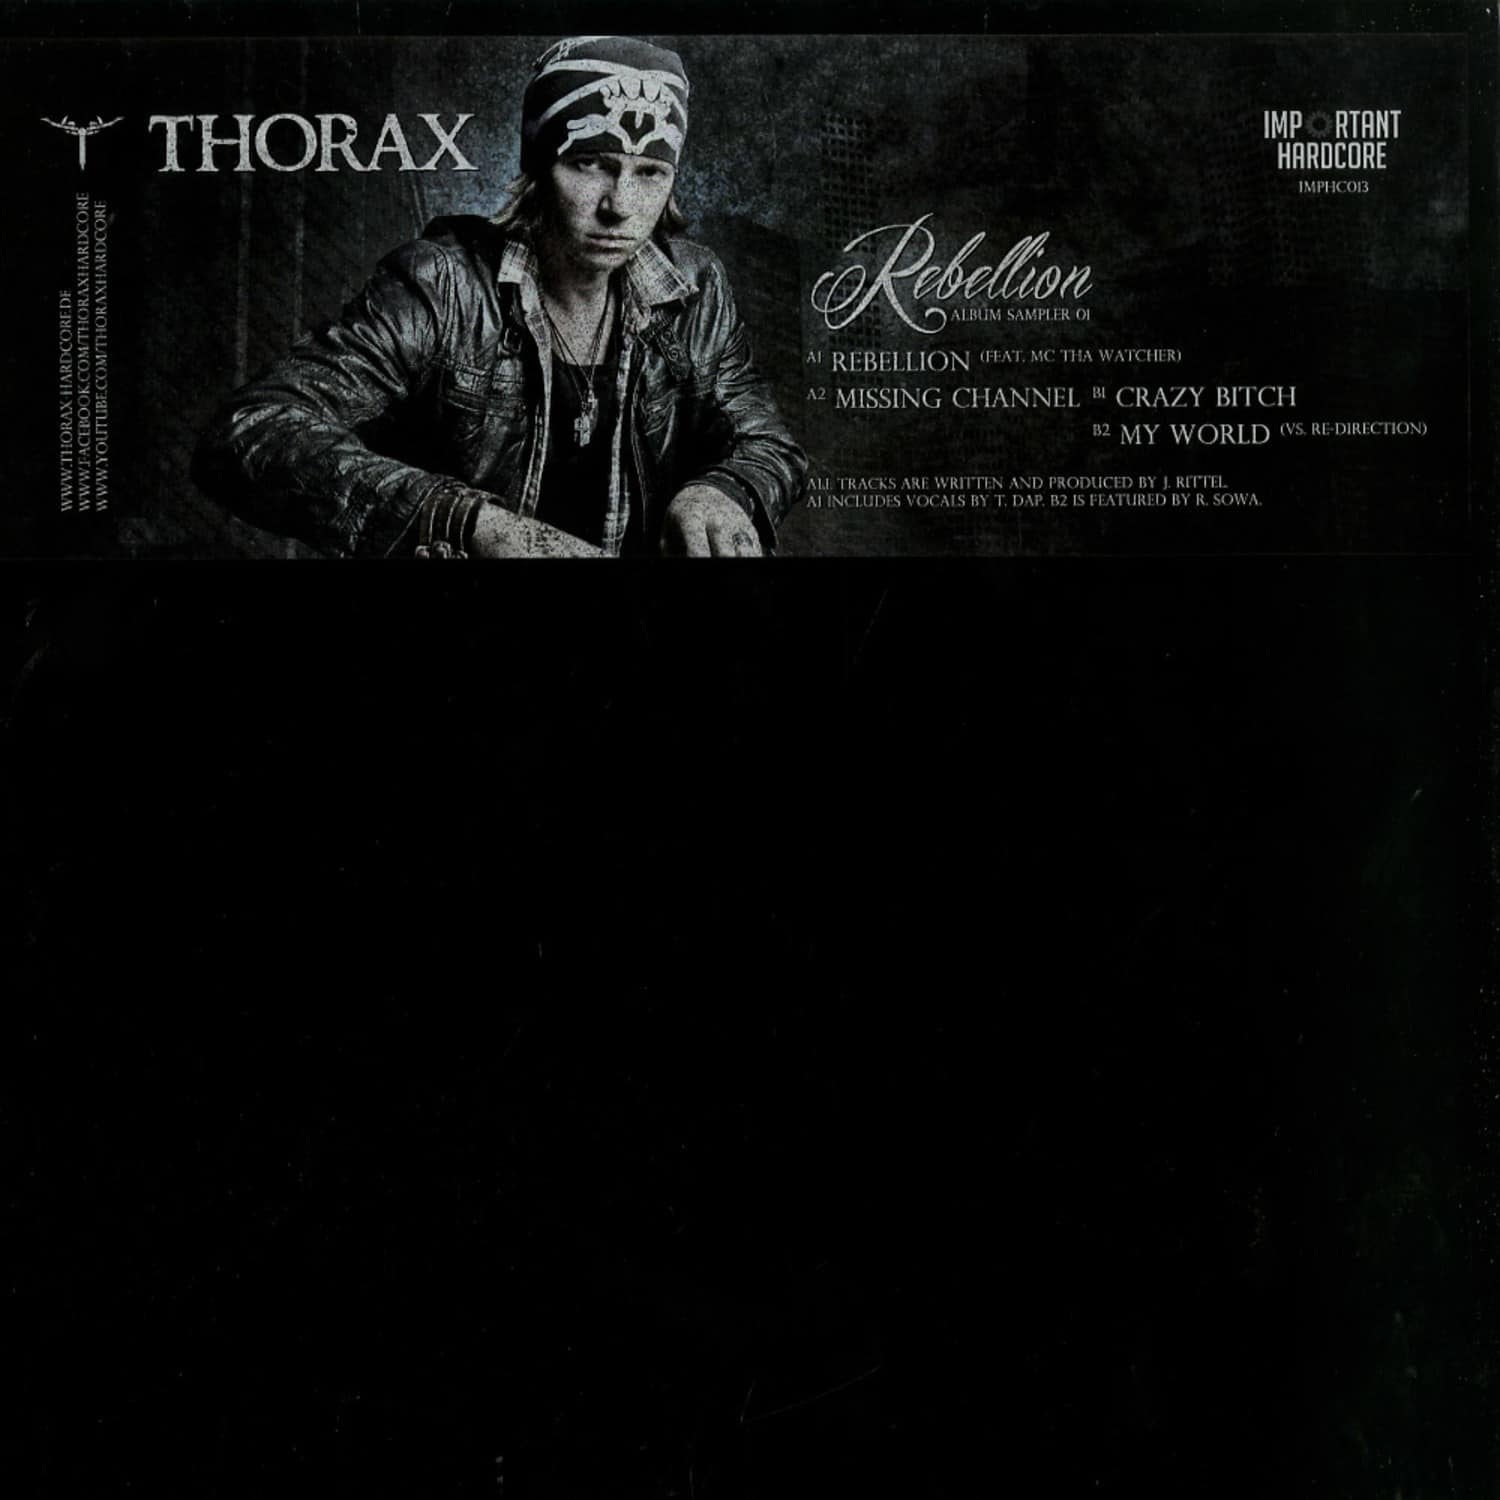 Thorax - REBELLION ALBUM SAMPLER 01